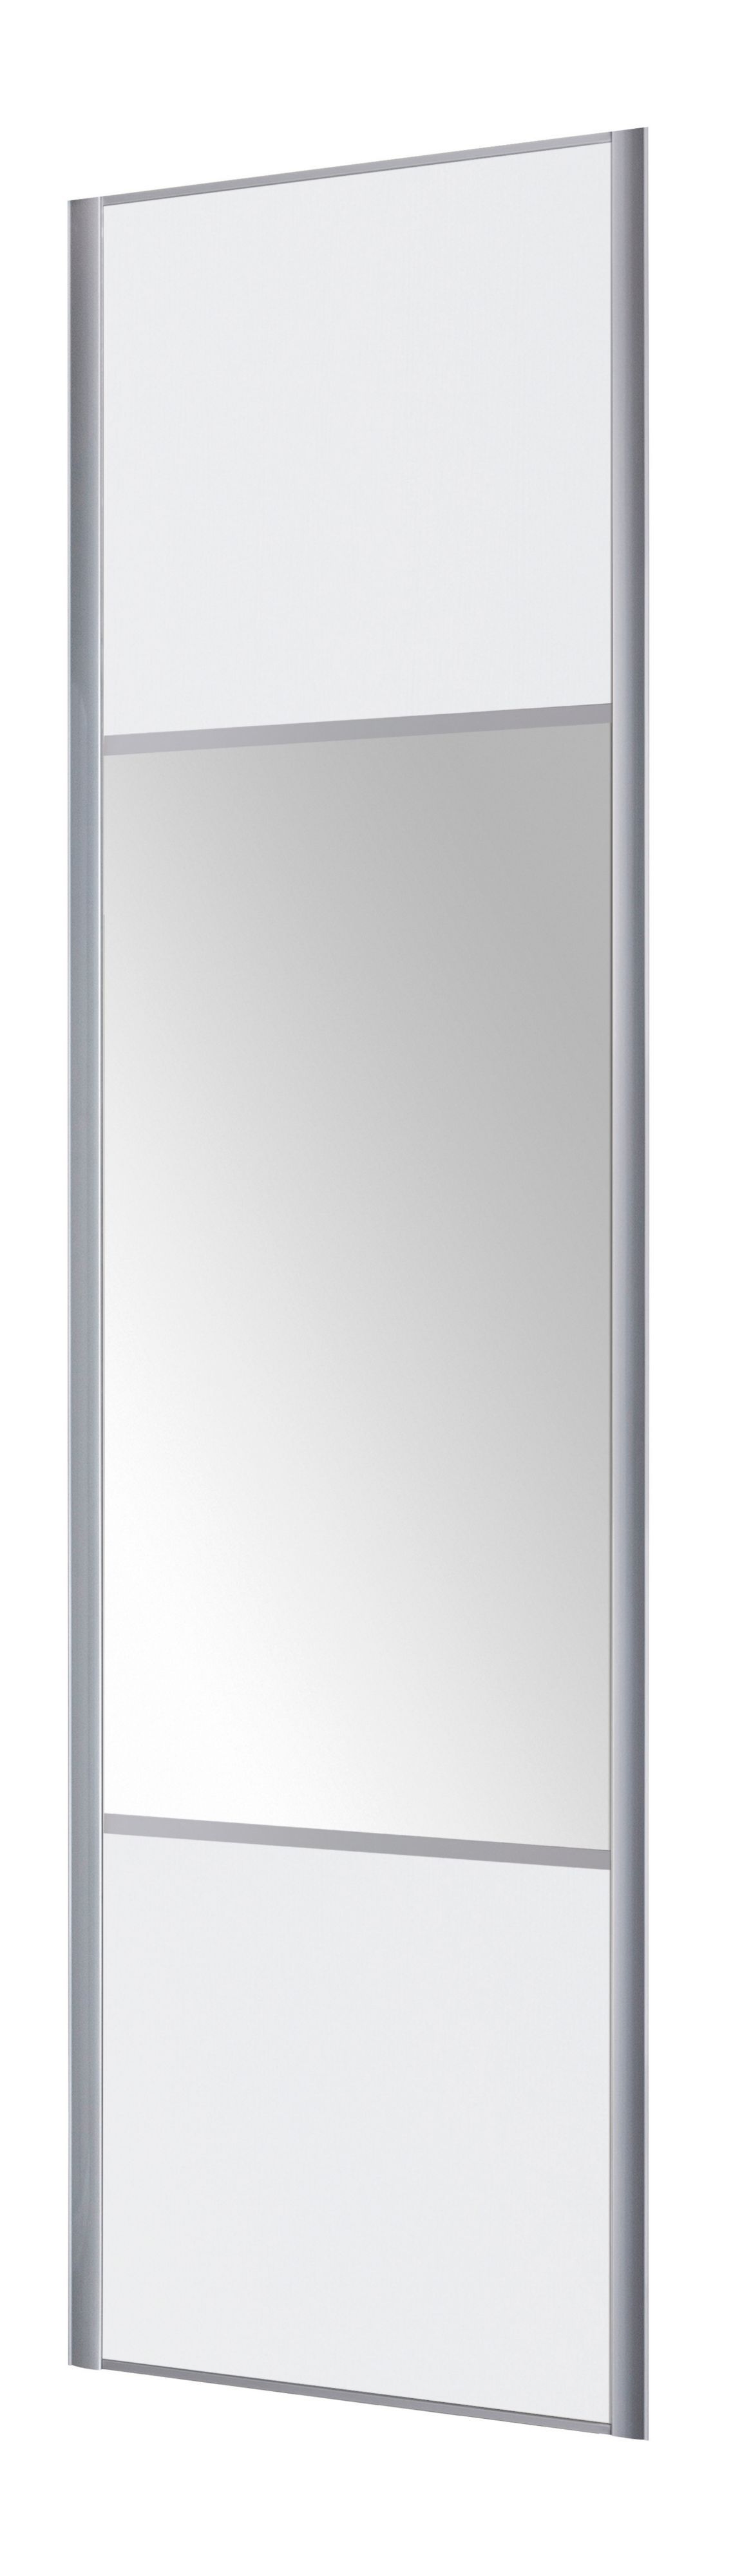 Form Valla Panelled White Mirrored Sliding wardrobe door (H) 2260mm x (W) 622mm